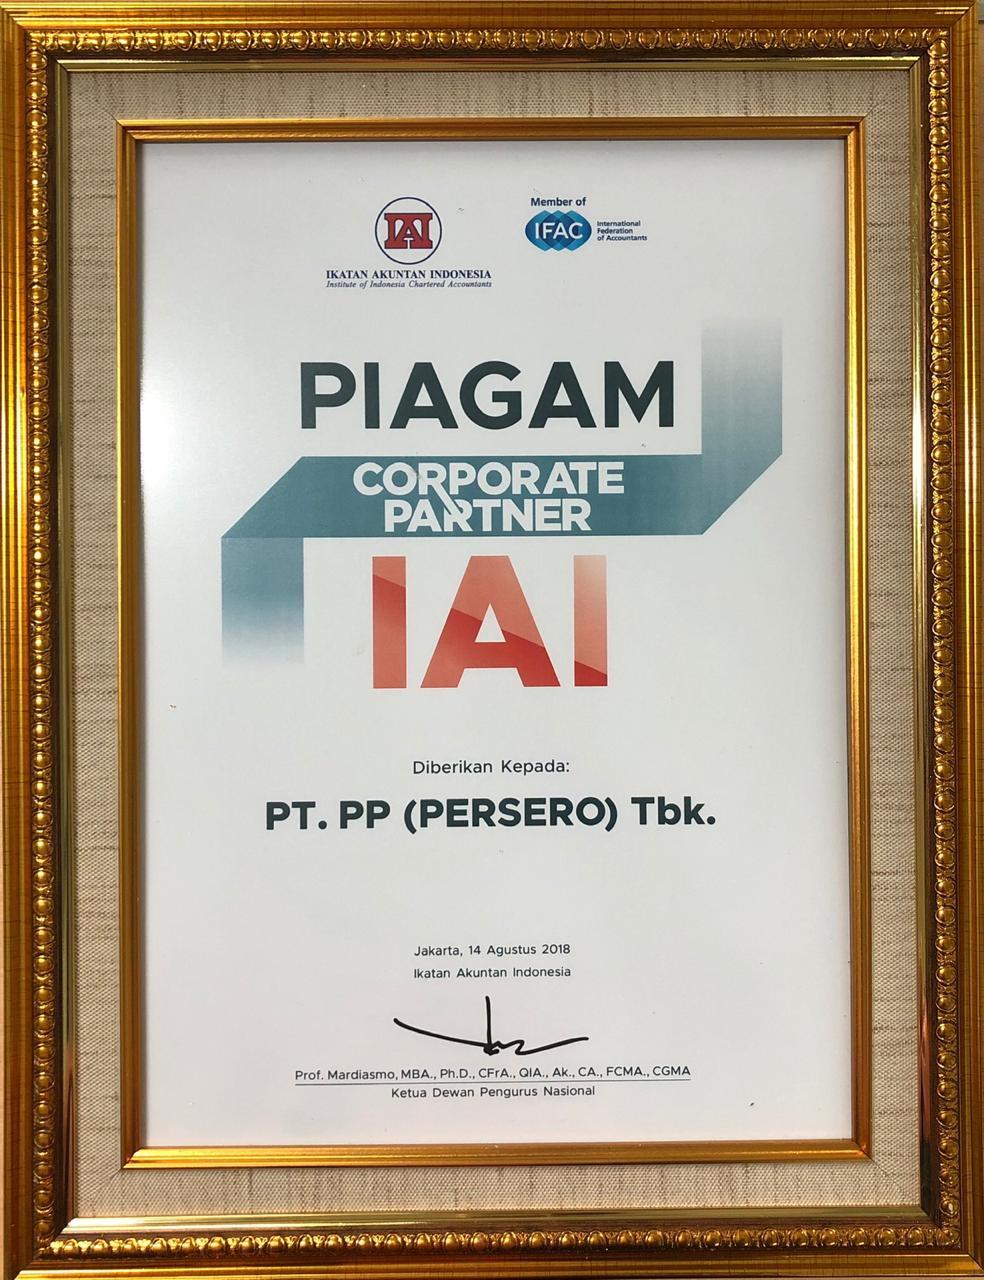 Piagam Corporate Partner IAI